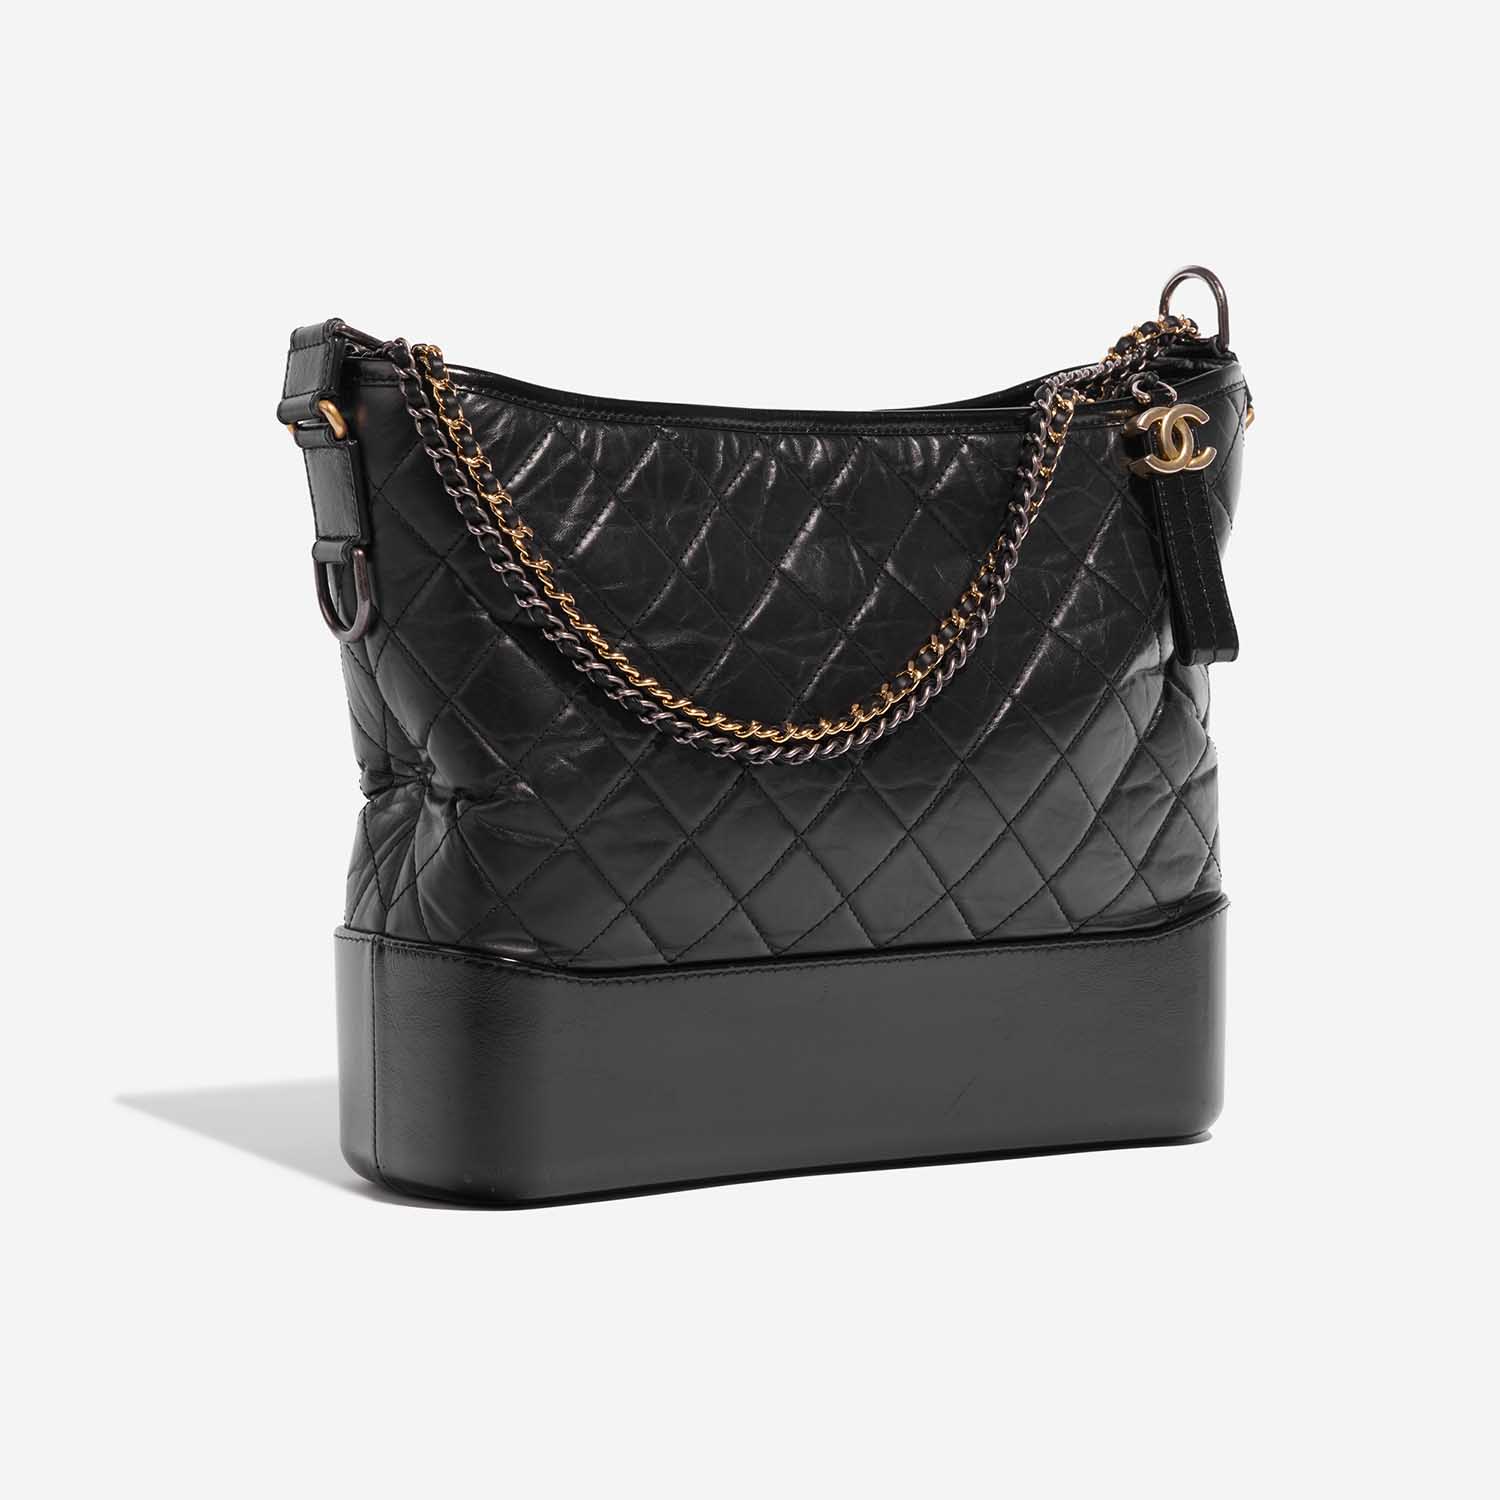 Sac Chanel d'occasion Gabrielle Large Veau Noir Noir Côté Face | Vendez votre sac de créateur sur Saclab.com